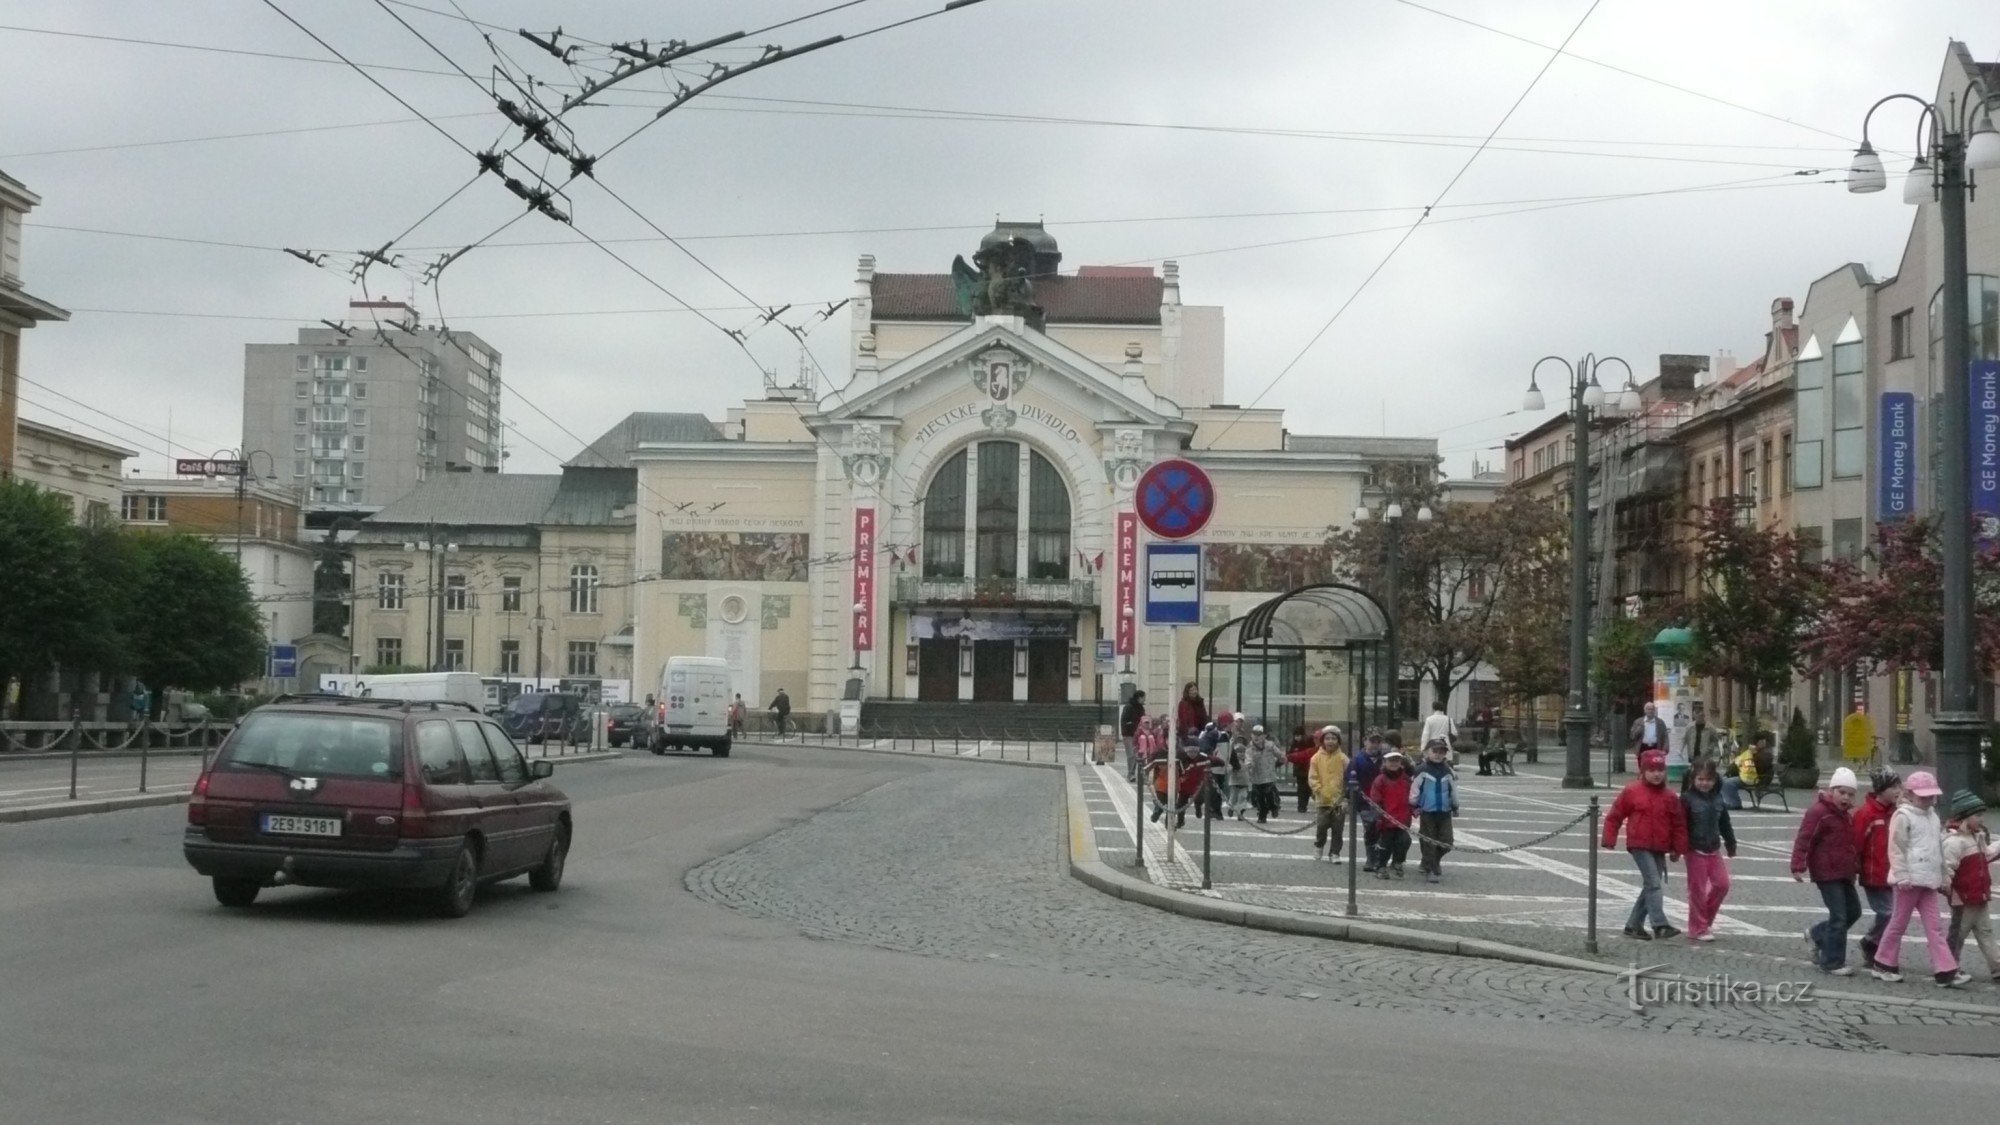 Stadstheater